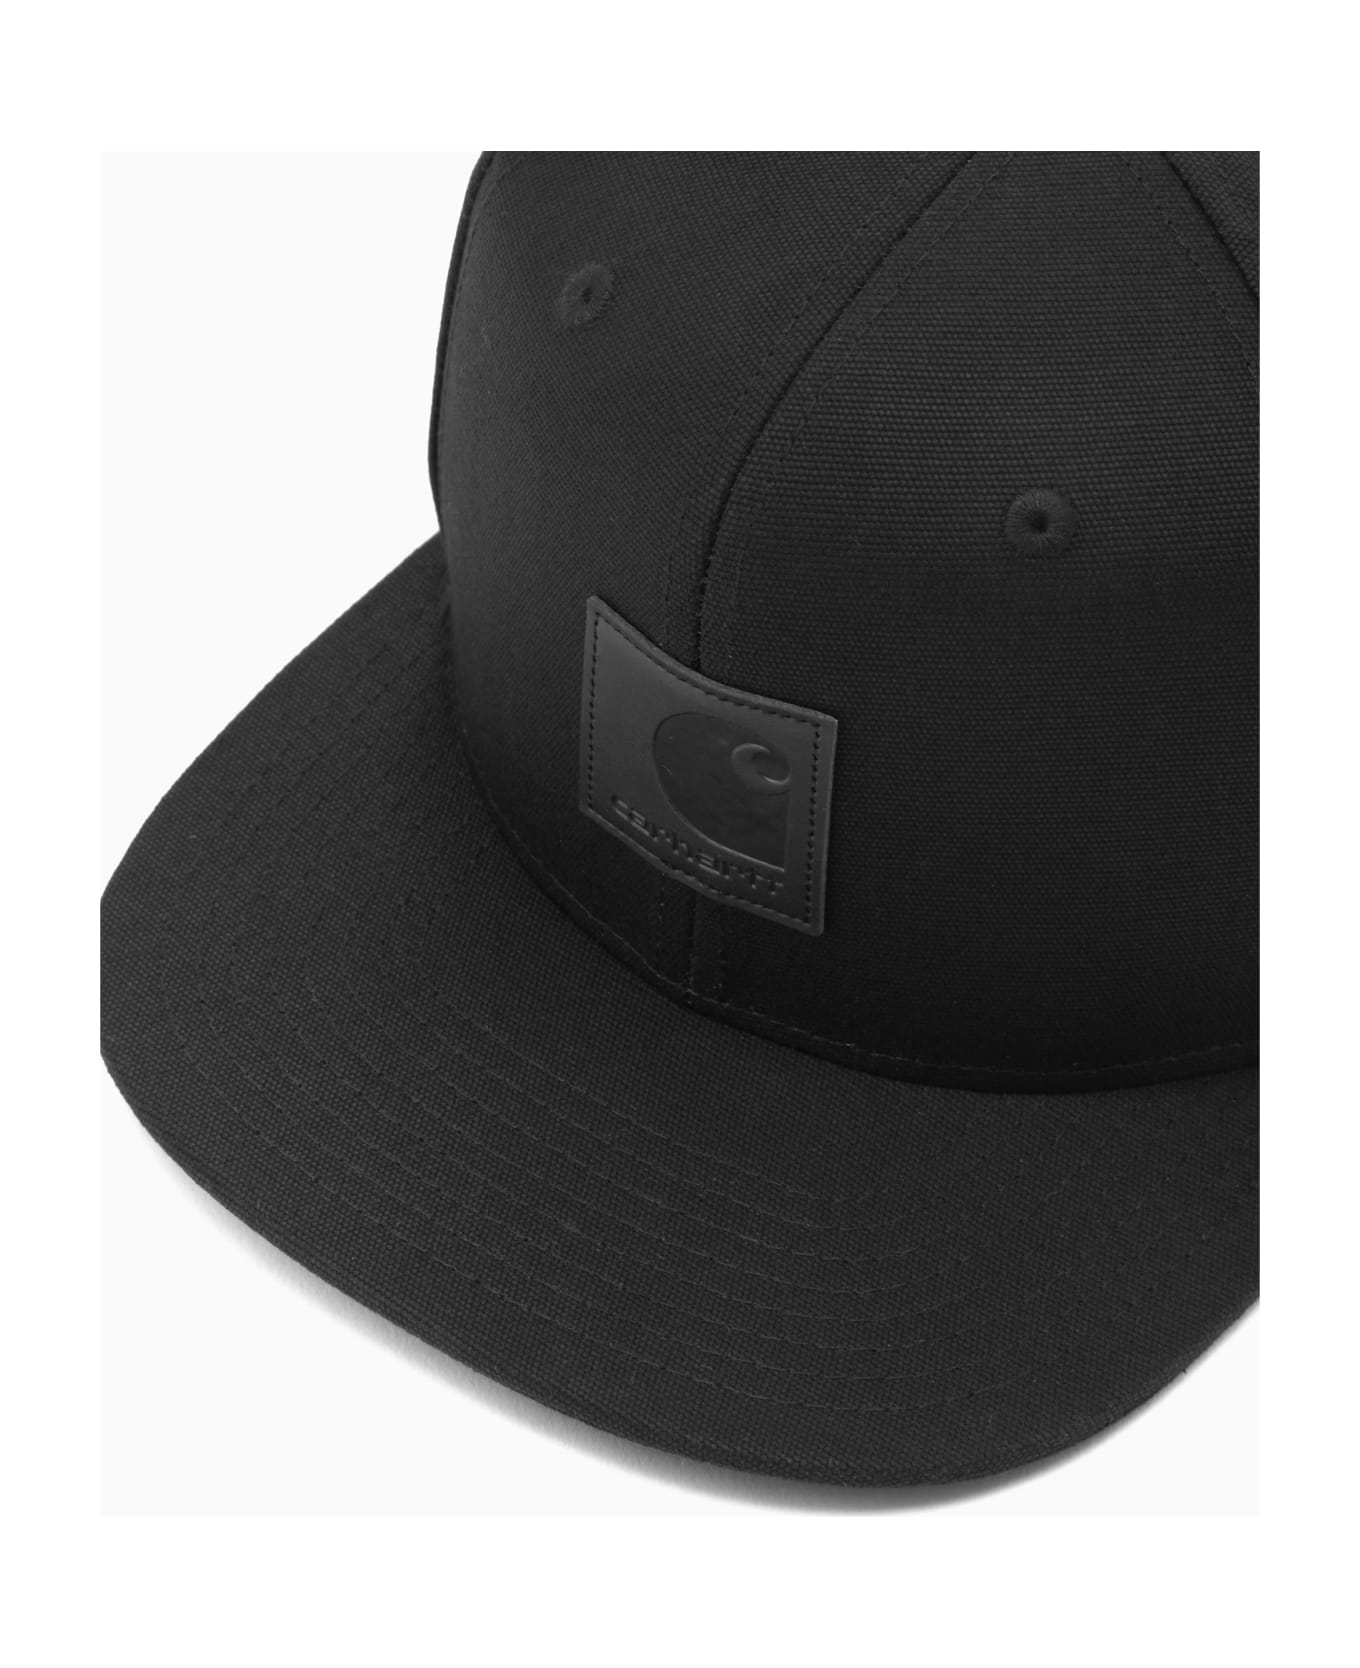 Carhartt Logo Cap - Xx Black 帽子